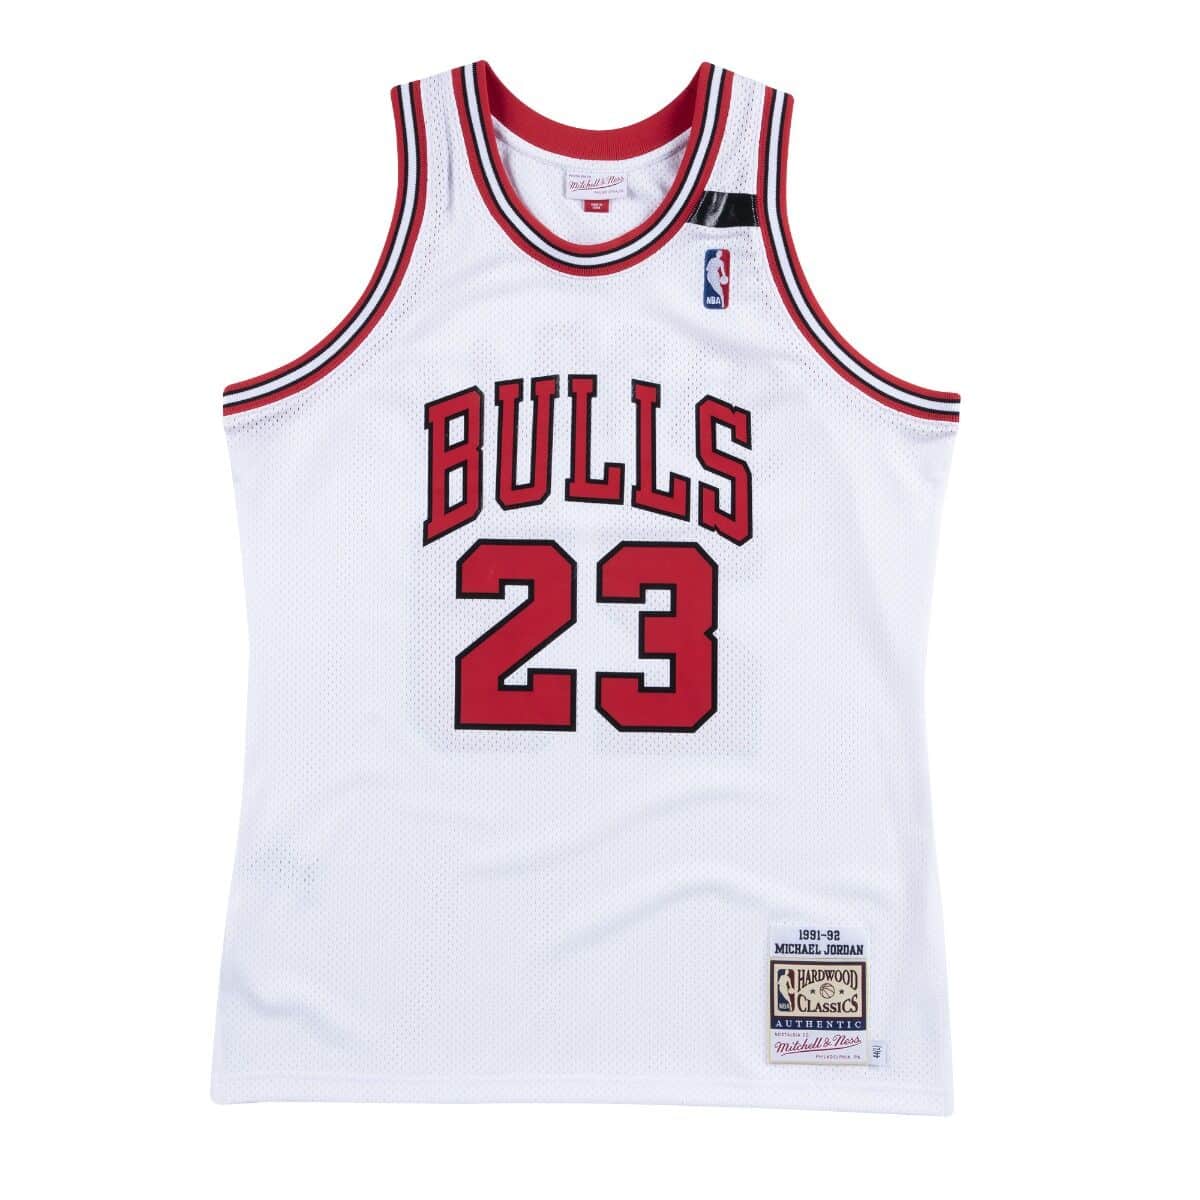 Authentic Jersey Chicago Bulls 1991-92 Michael Jordans